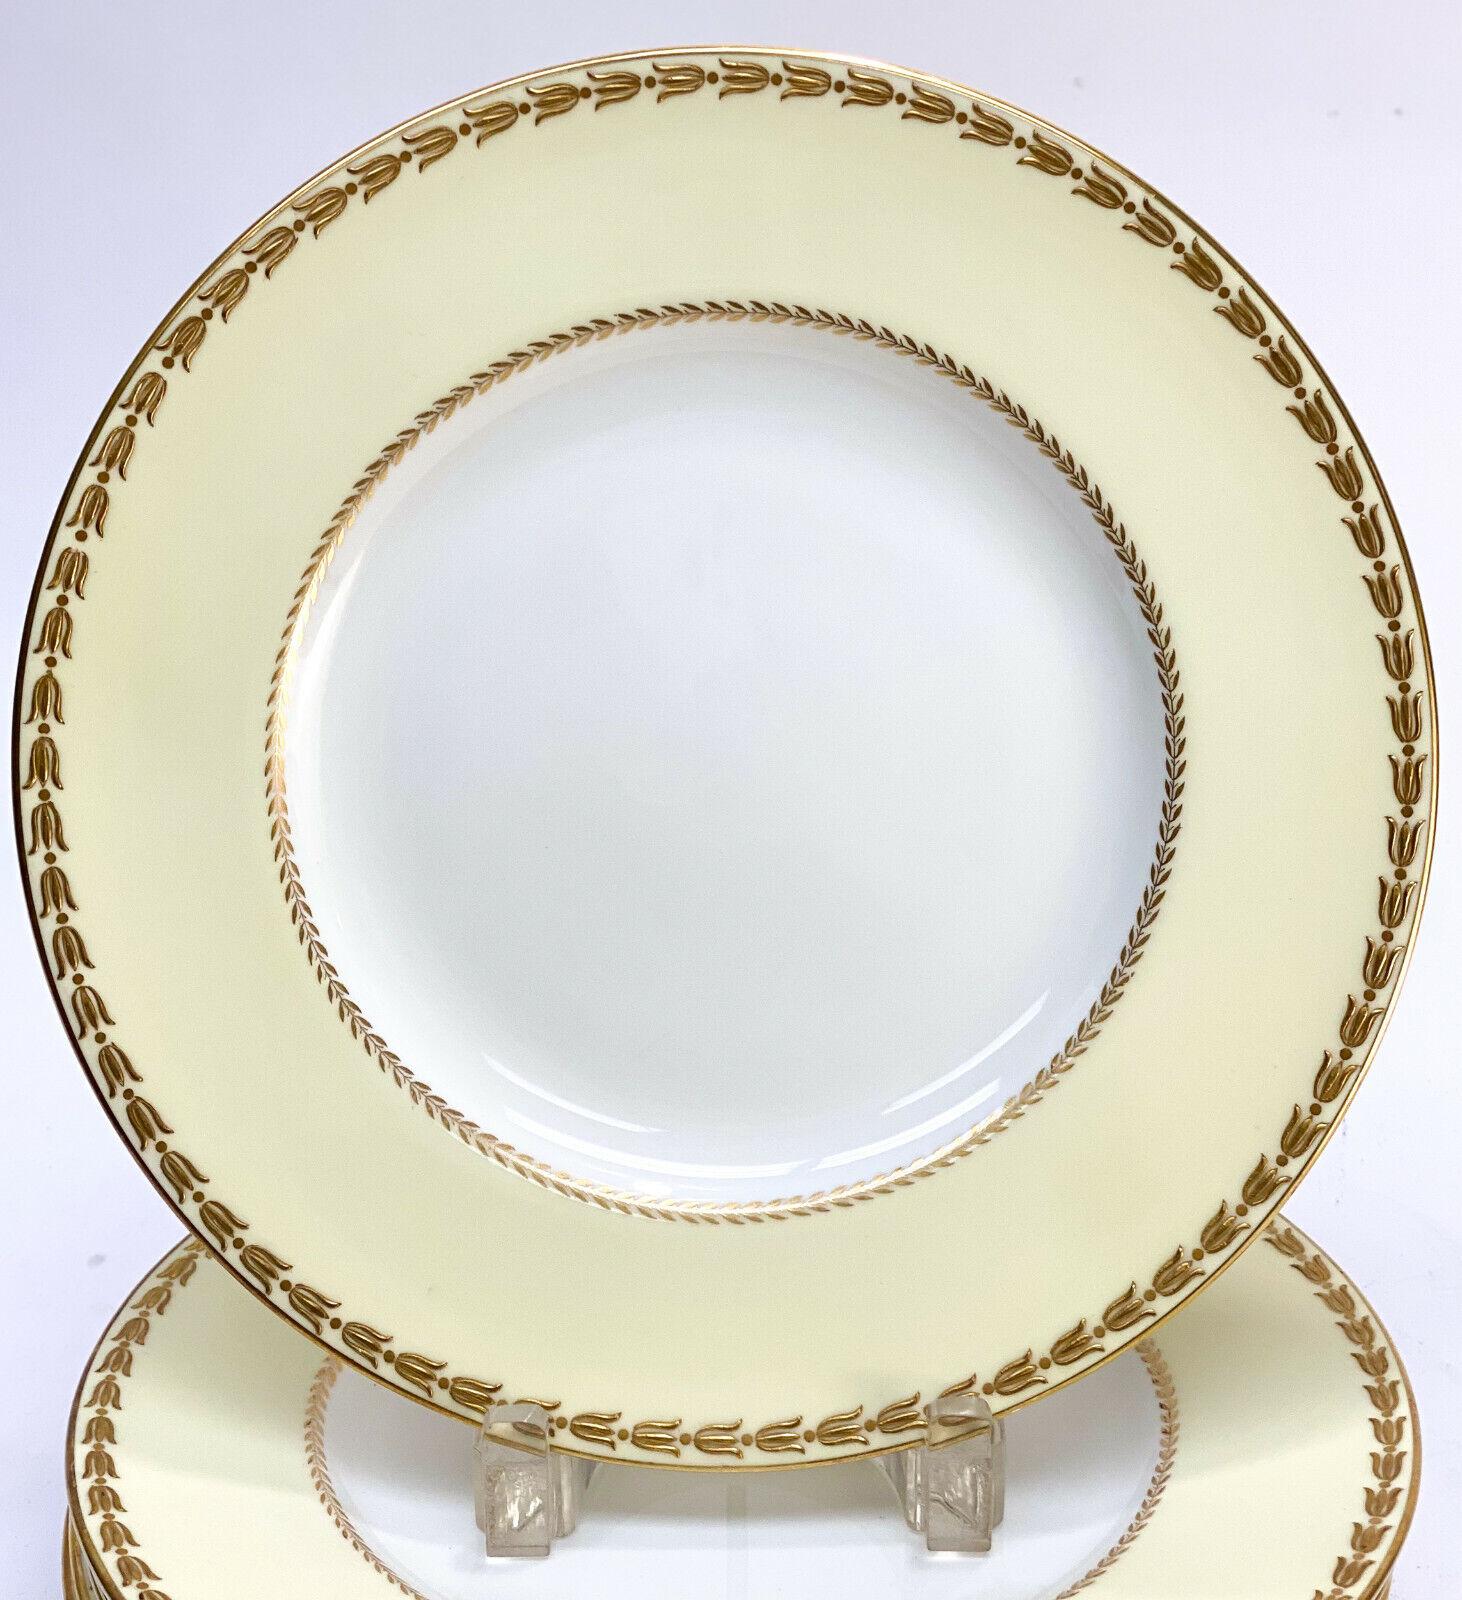 8 assiettes à dîner de style Empire en porcelaine et dorure Royal Worcester England, 1940. Un fond jaune pâle et blanc avec des feuilles de laurier dorées sur les bords. Marque Royal Worcester sur le dessous de la base, datant de 1940.


Poids